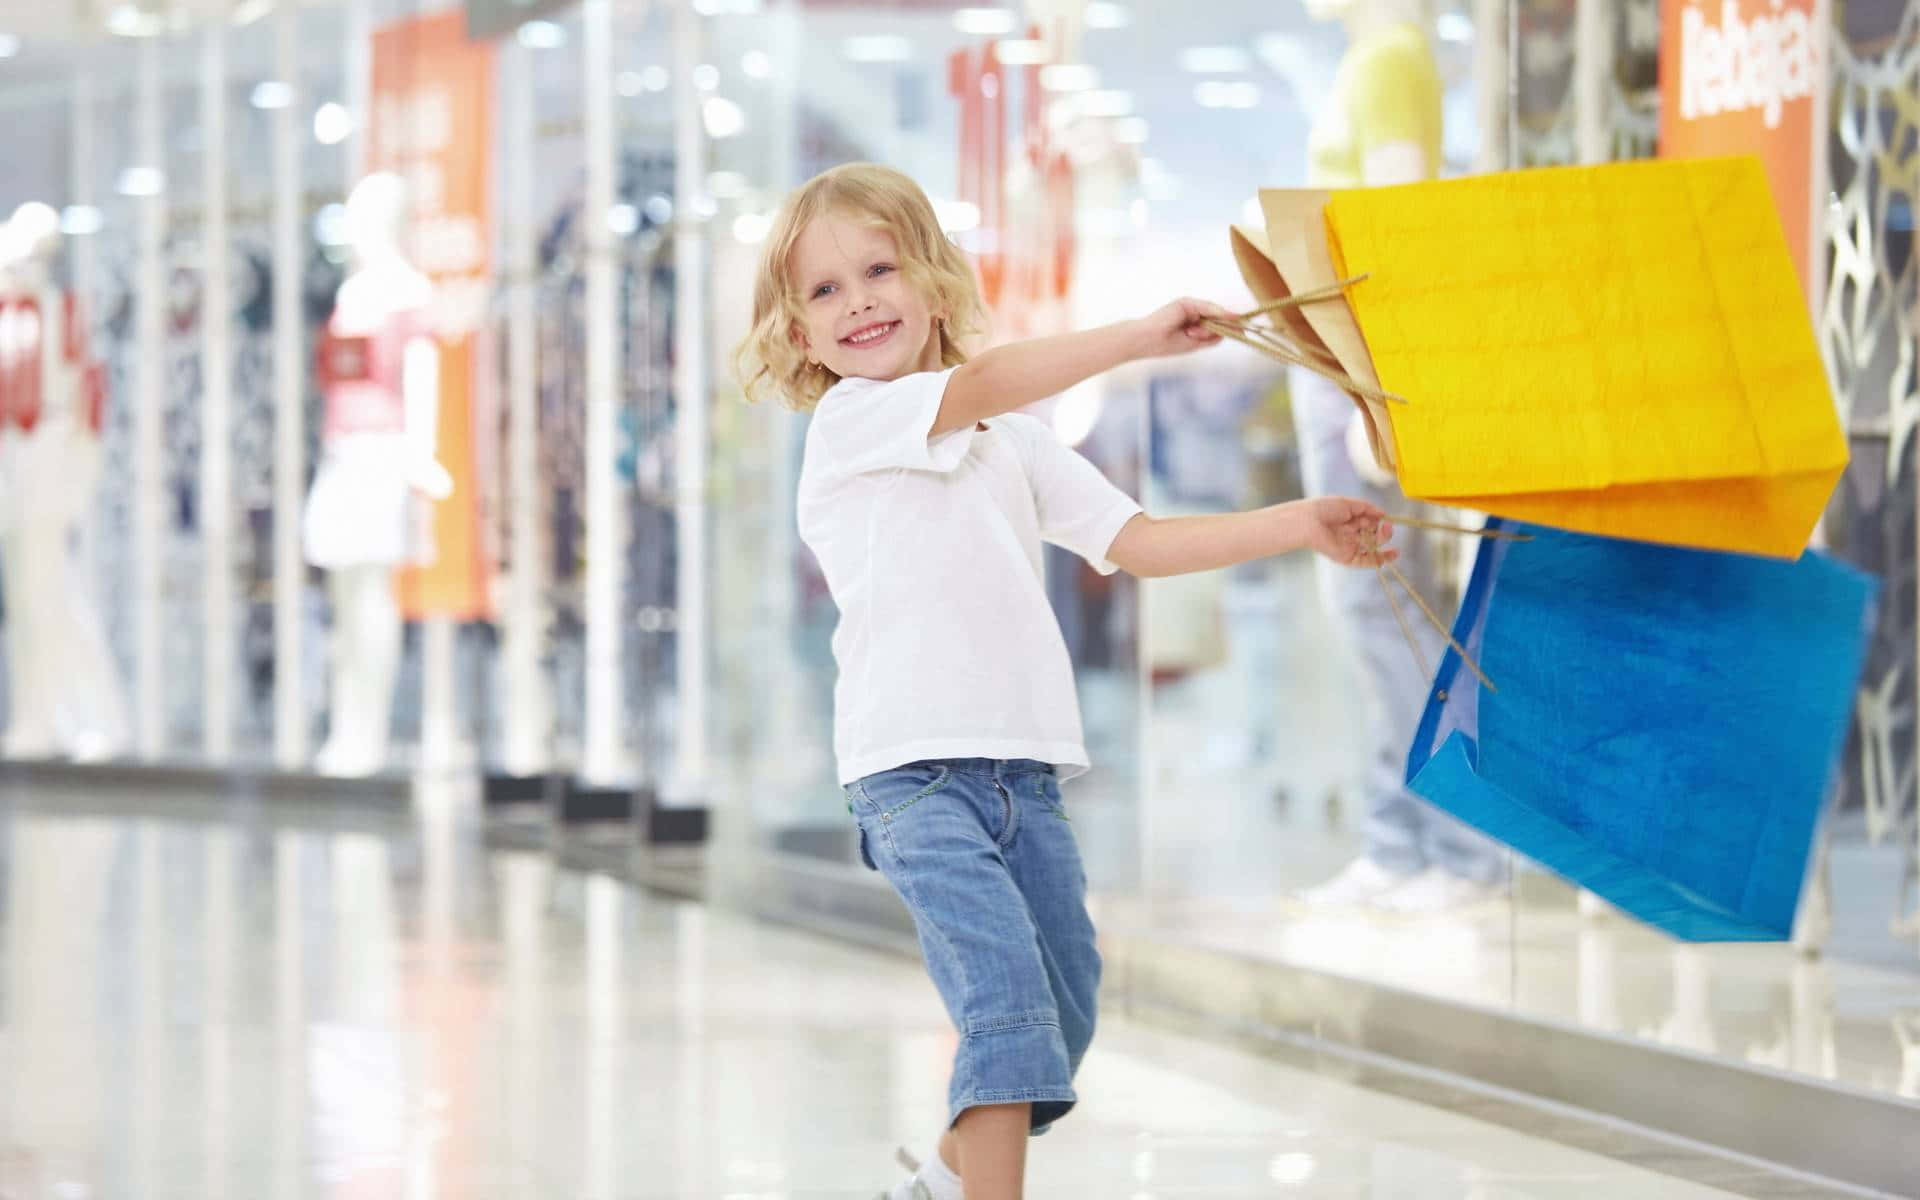 Einkleines Mädchen Hält Einkaufstaschen In Einer Einkaufspassage.